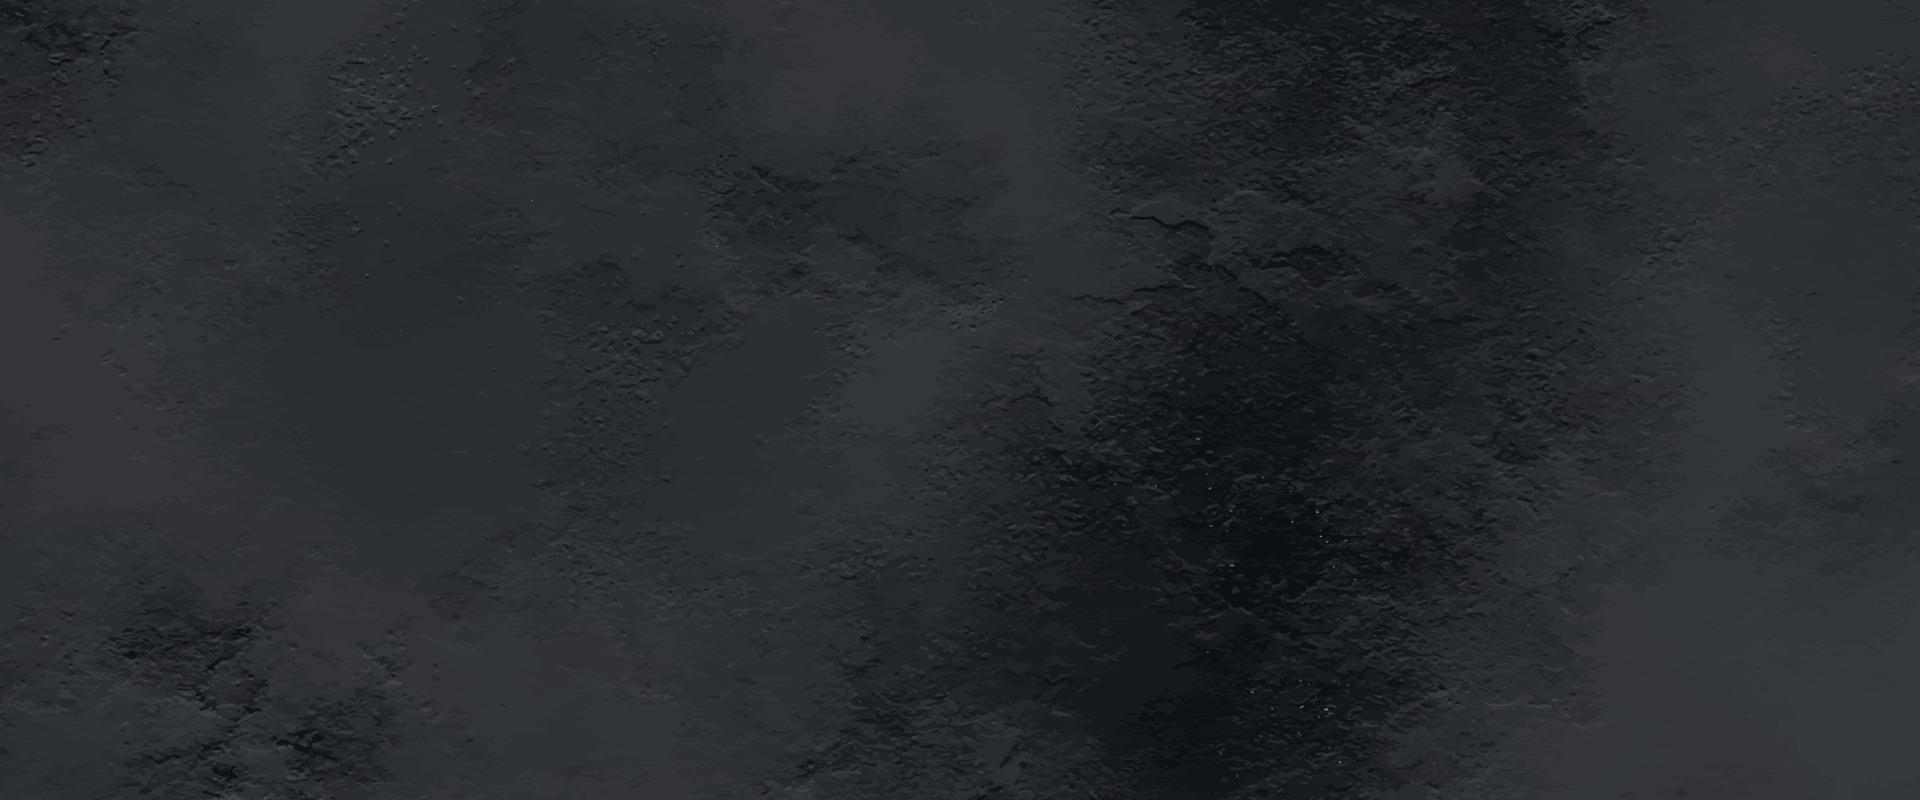 lindo grunge aquarela cinza. fundo de textura de mármore preto. padrão de natureza abstrata para design. fronteira de fumaça. efeito enevoado para filme, texto ou espaço. textura de parede preta e cinza abstrata. vetor